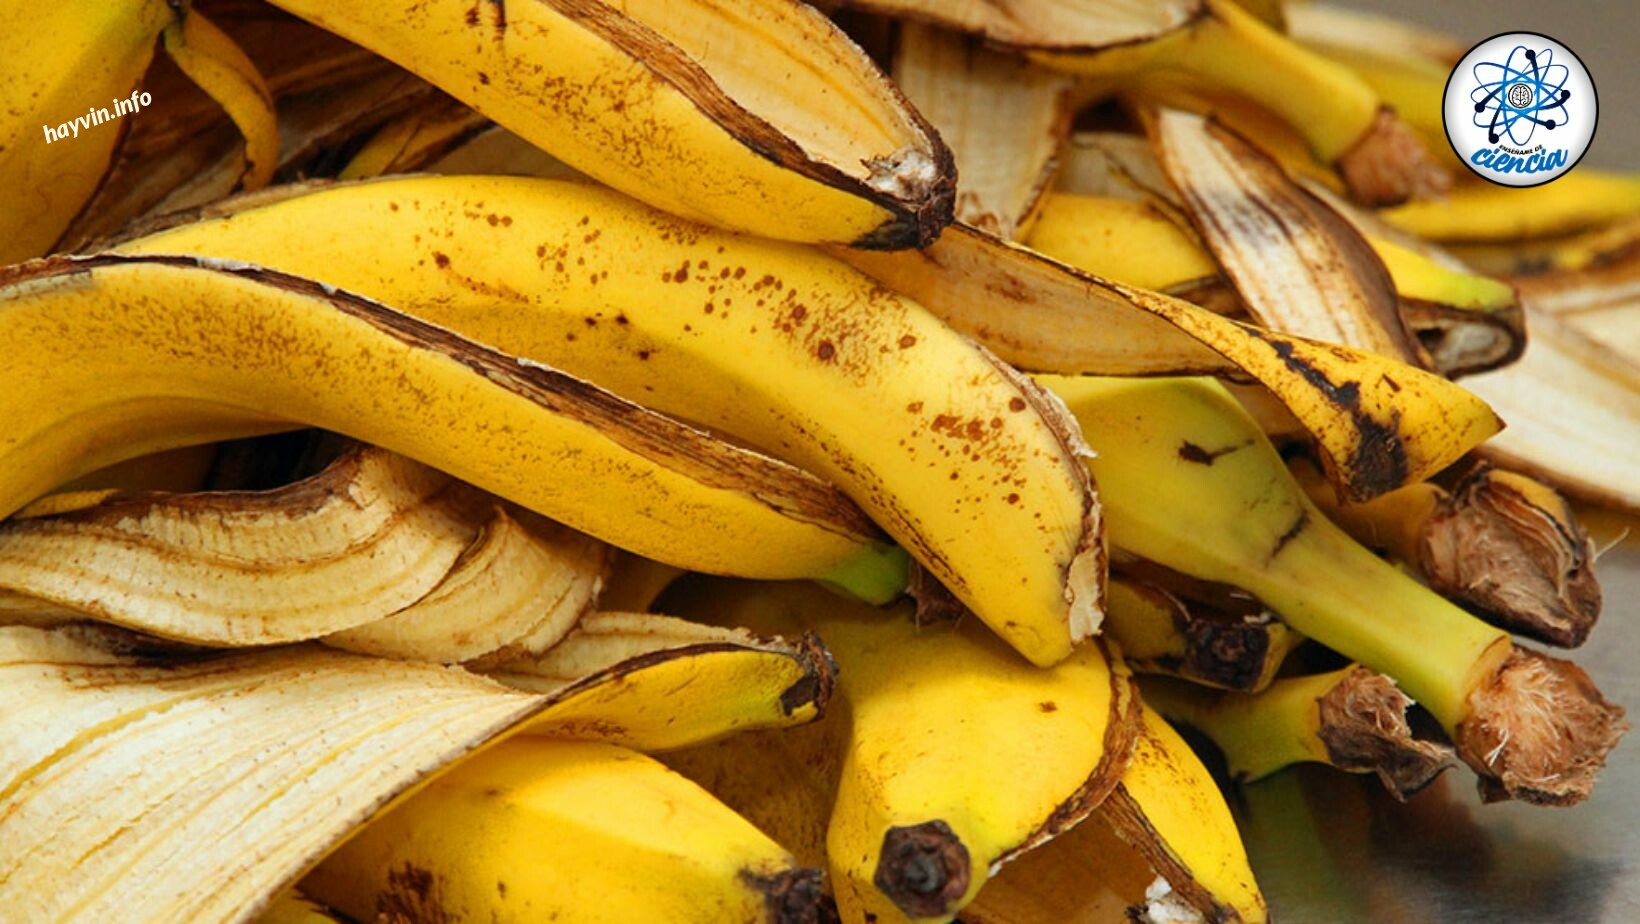 Eláruljuk a banánhéj meglepő előnyeit, ha összetevőként használják